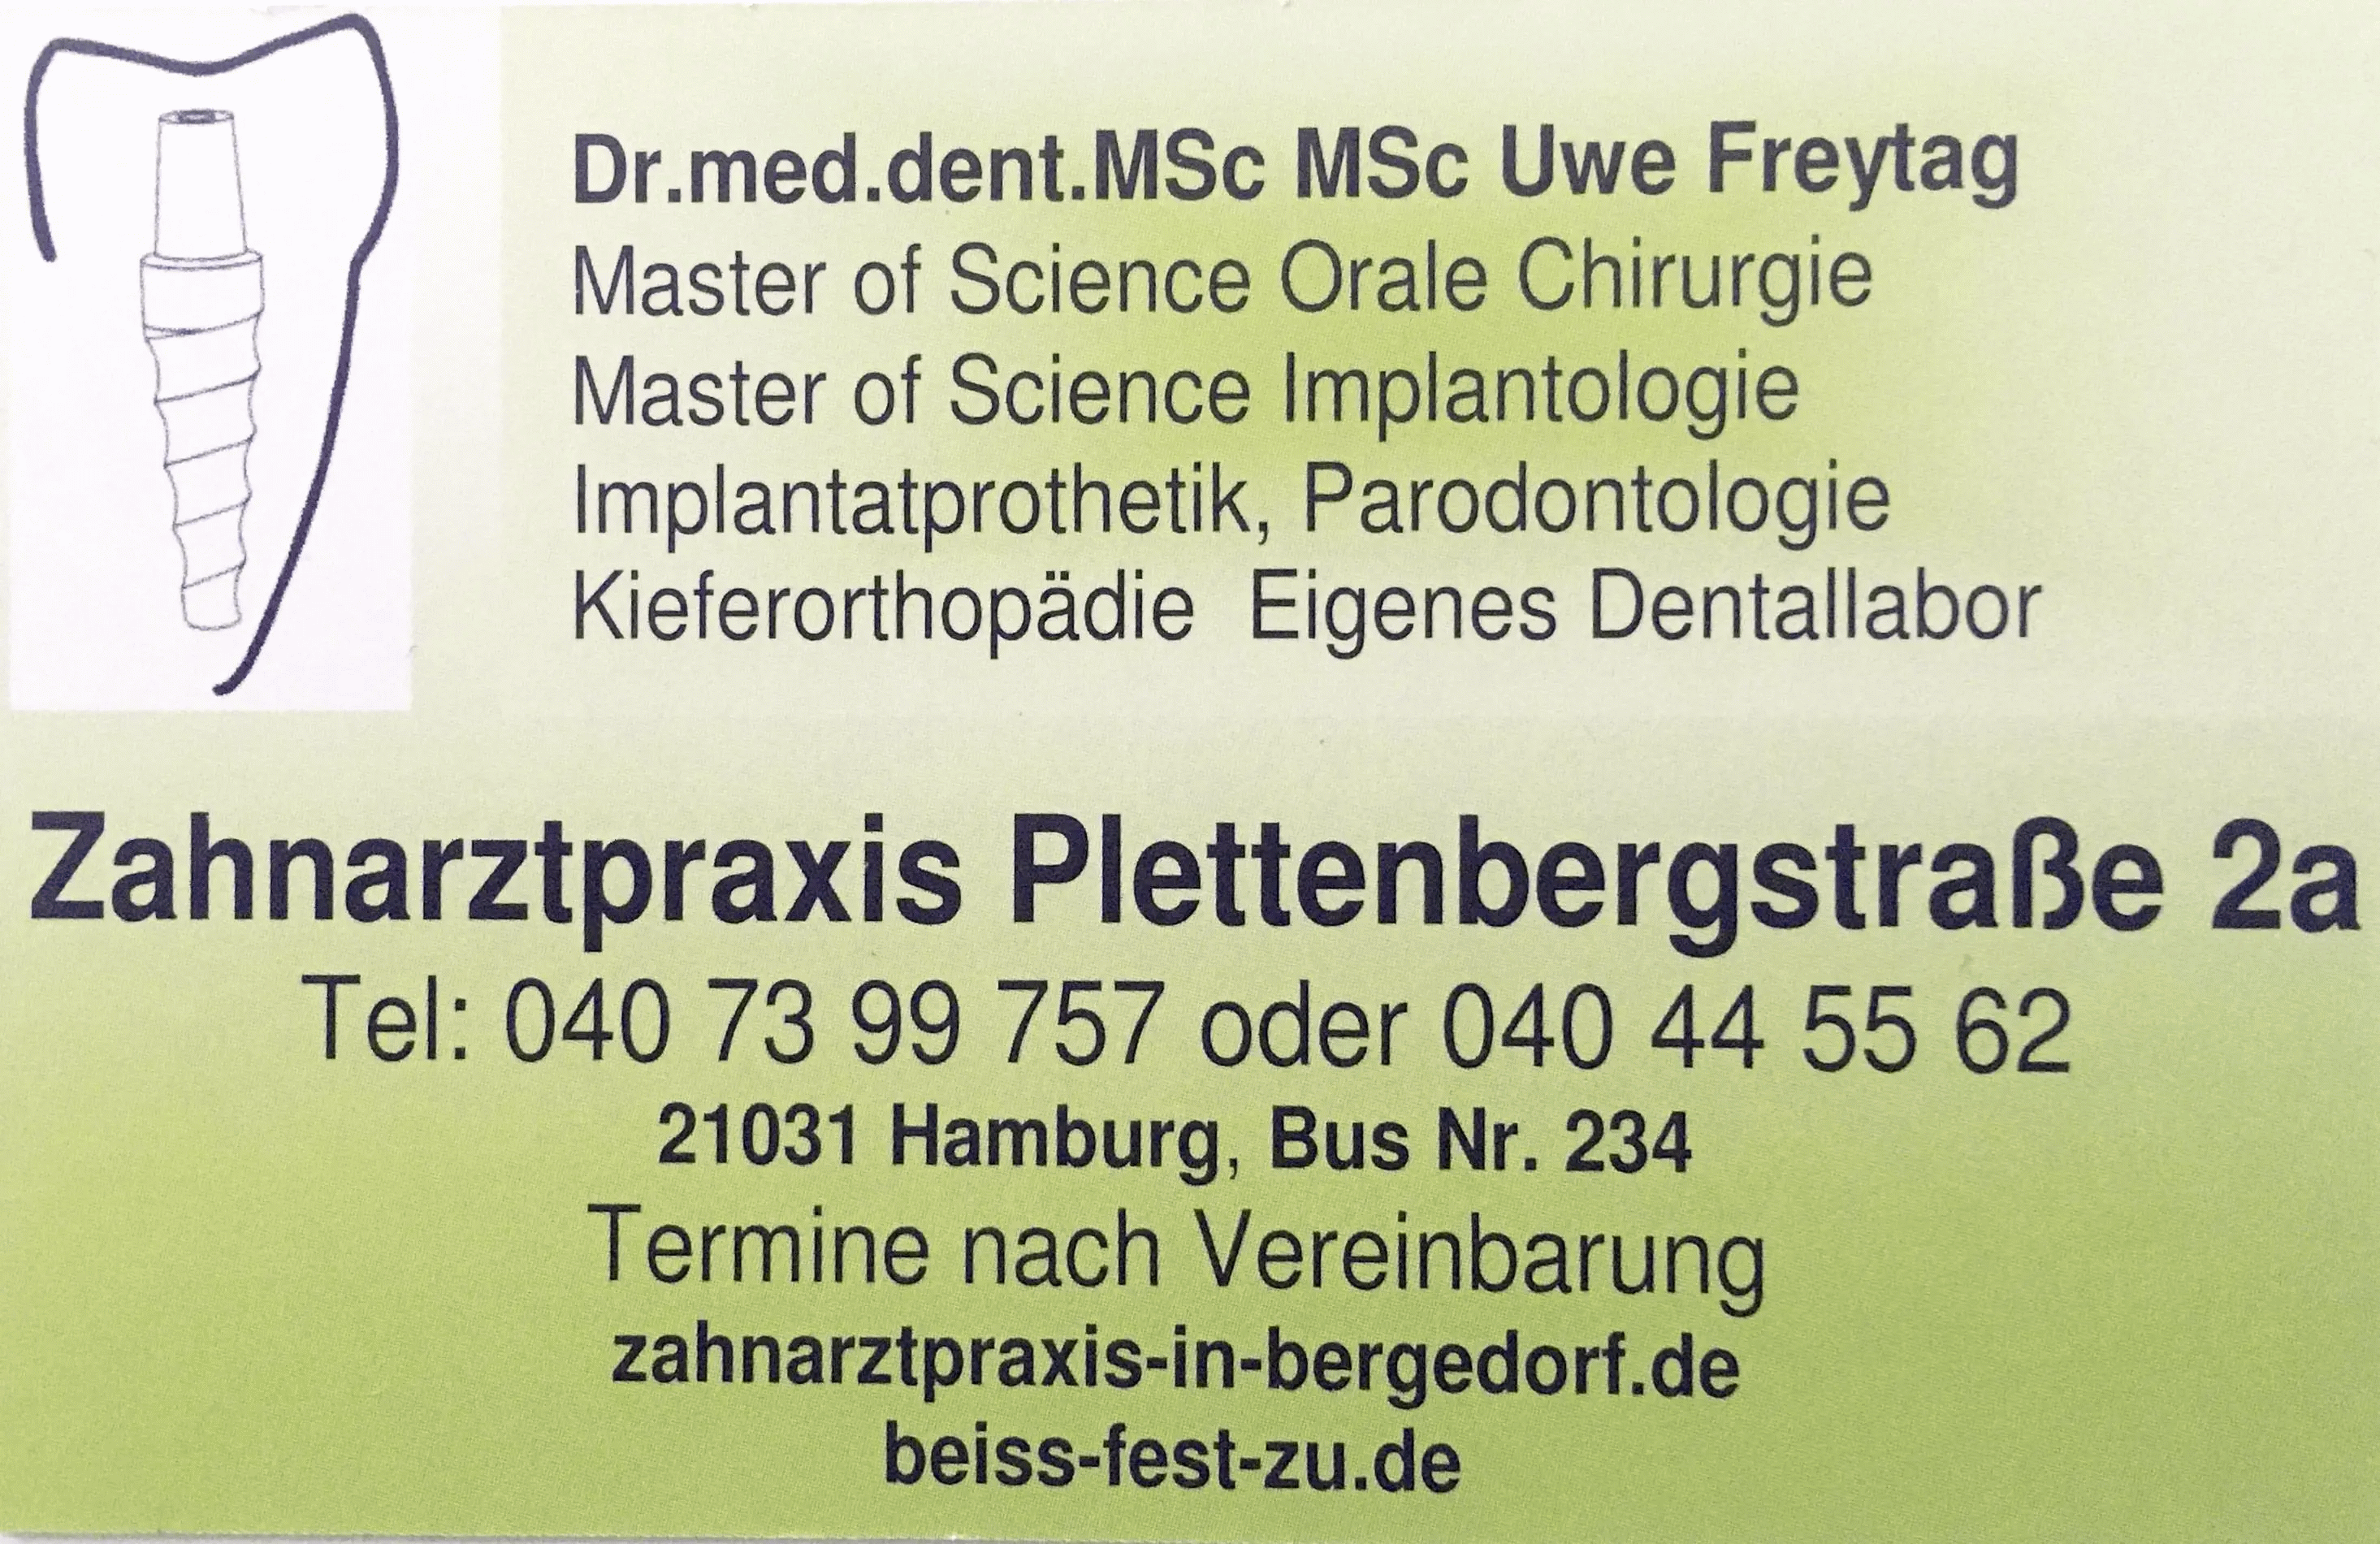 Zahnarzt Bergedorf / Lohbrügge Dr. Freytag Oralchirurg 
Praxis-Klinik Bergedorf, Alte Holstenstr. 2, 21031 Hamburg Bergedorf zahnarzt.hamburg@web.de 
Zahnstation